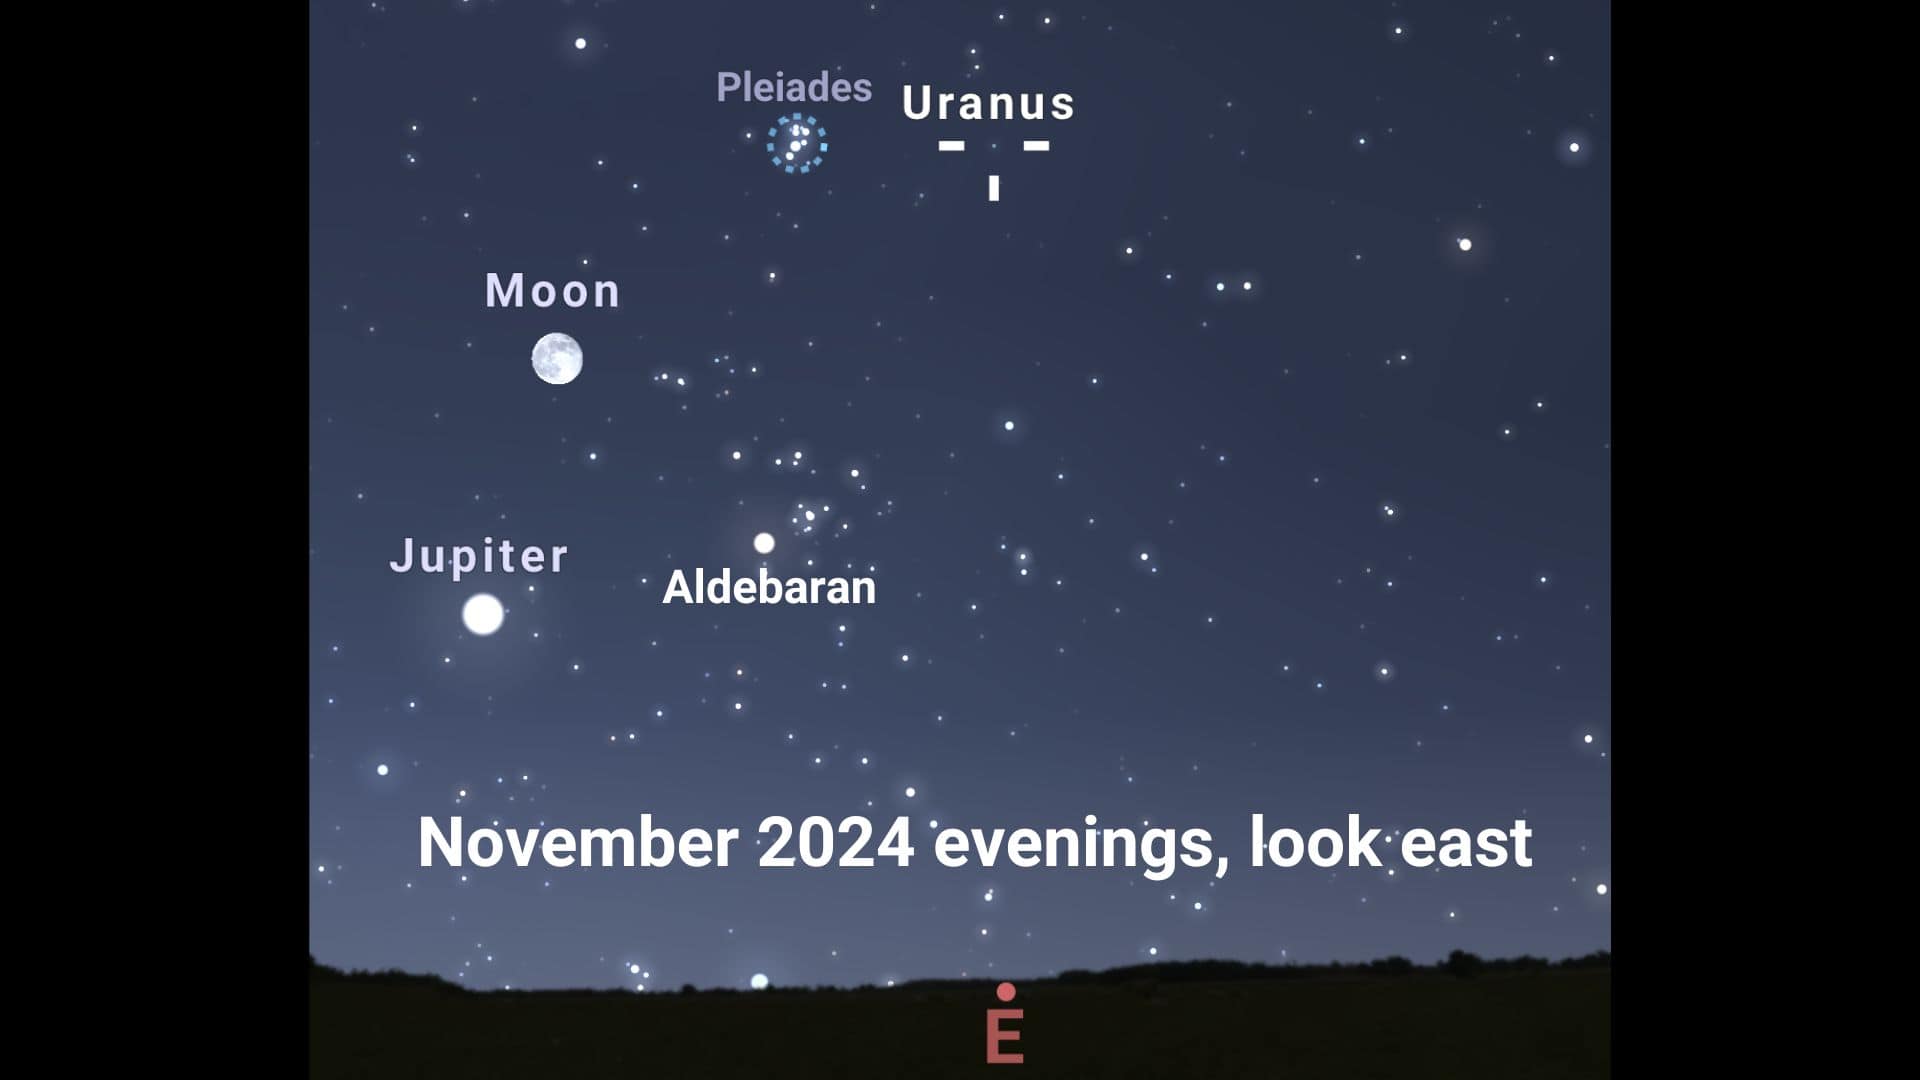 Uranus will reach opposition on November 17, 2024